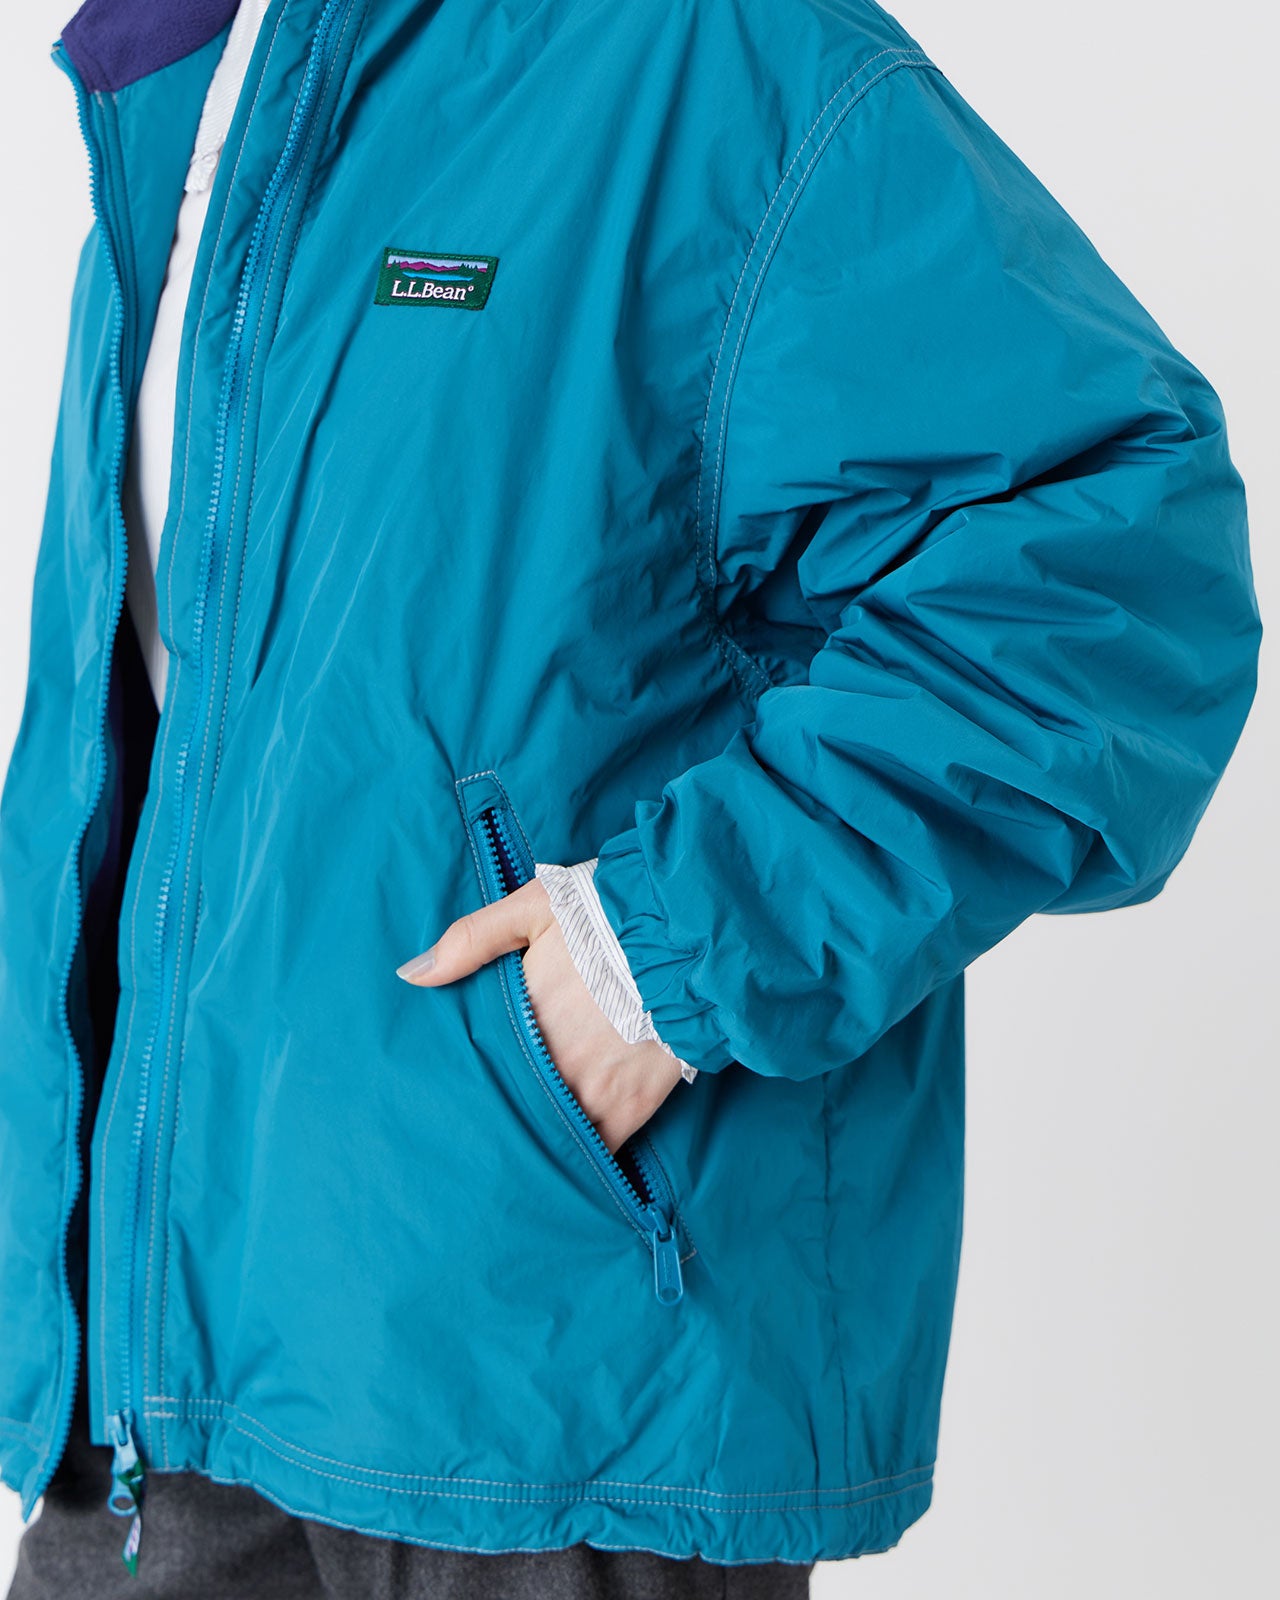 L.L. Bean Lovell Microfleece lined jacket – Shinzone